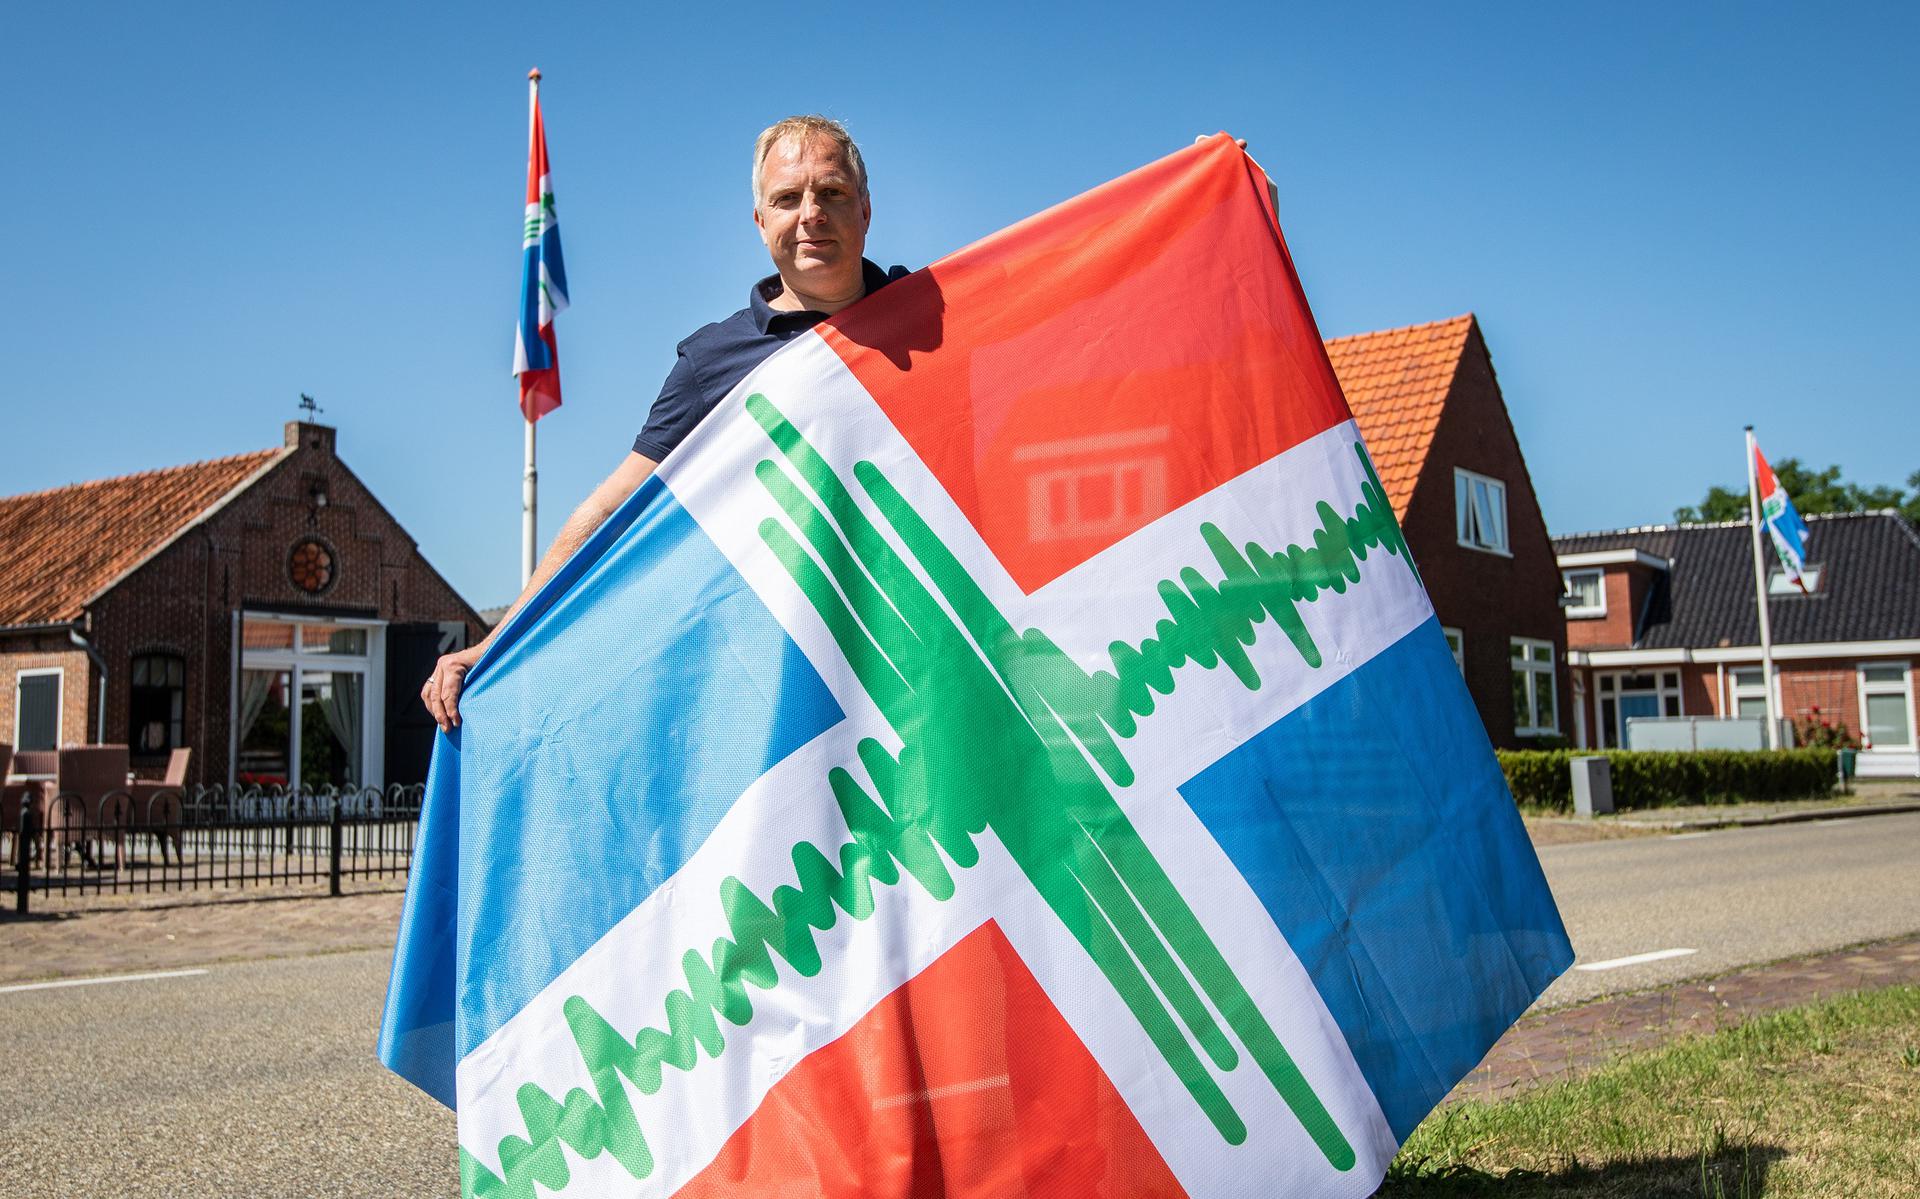 Ondernemer Mark van Esveld heeft een Groninger aardbevingsvlag bedacht. Foto: Huisman Media